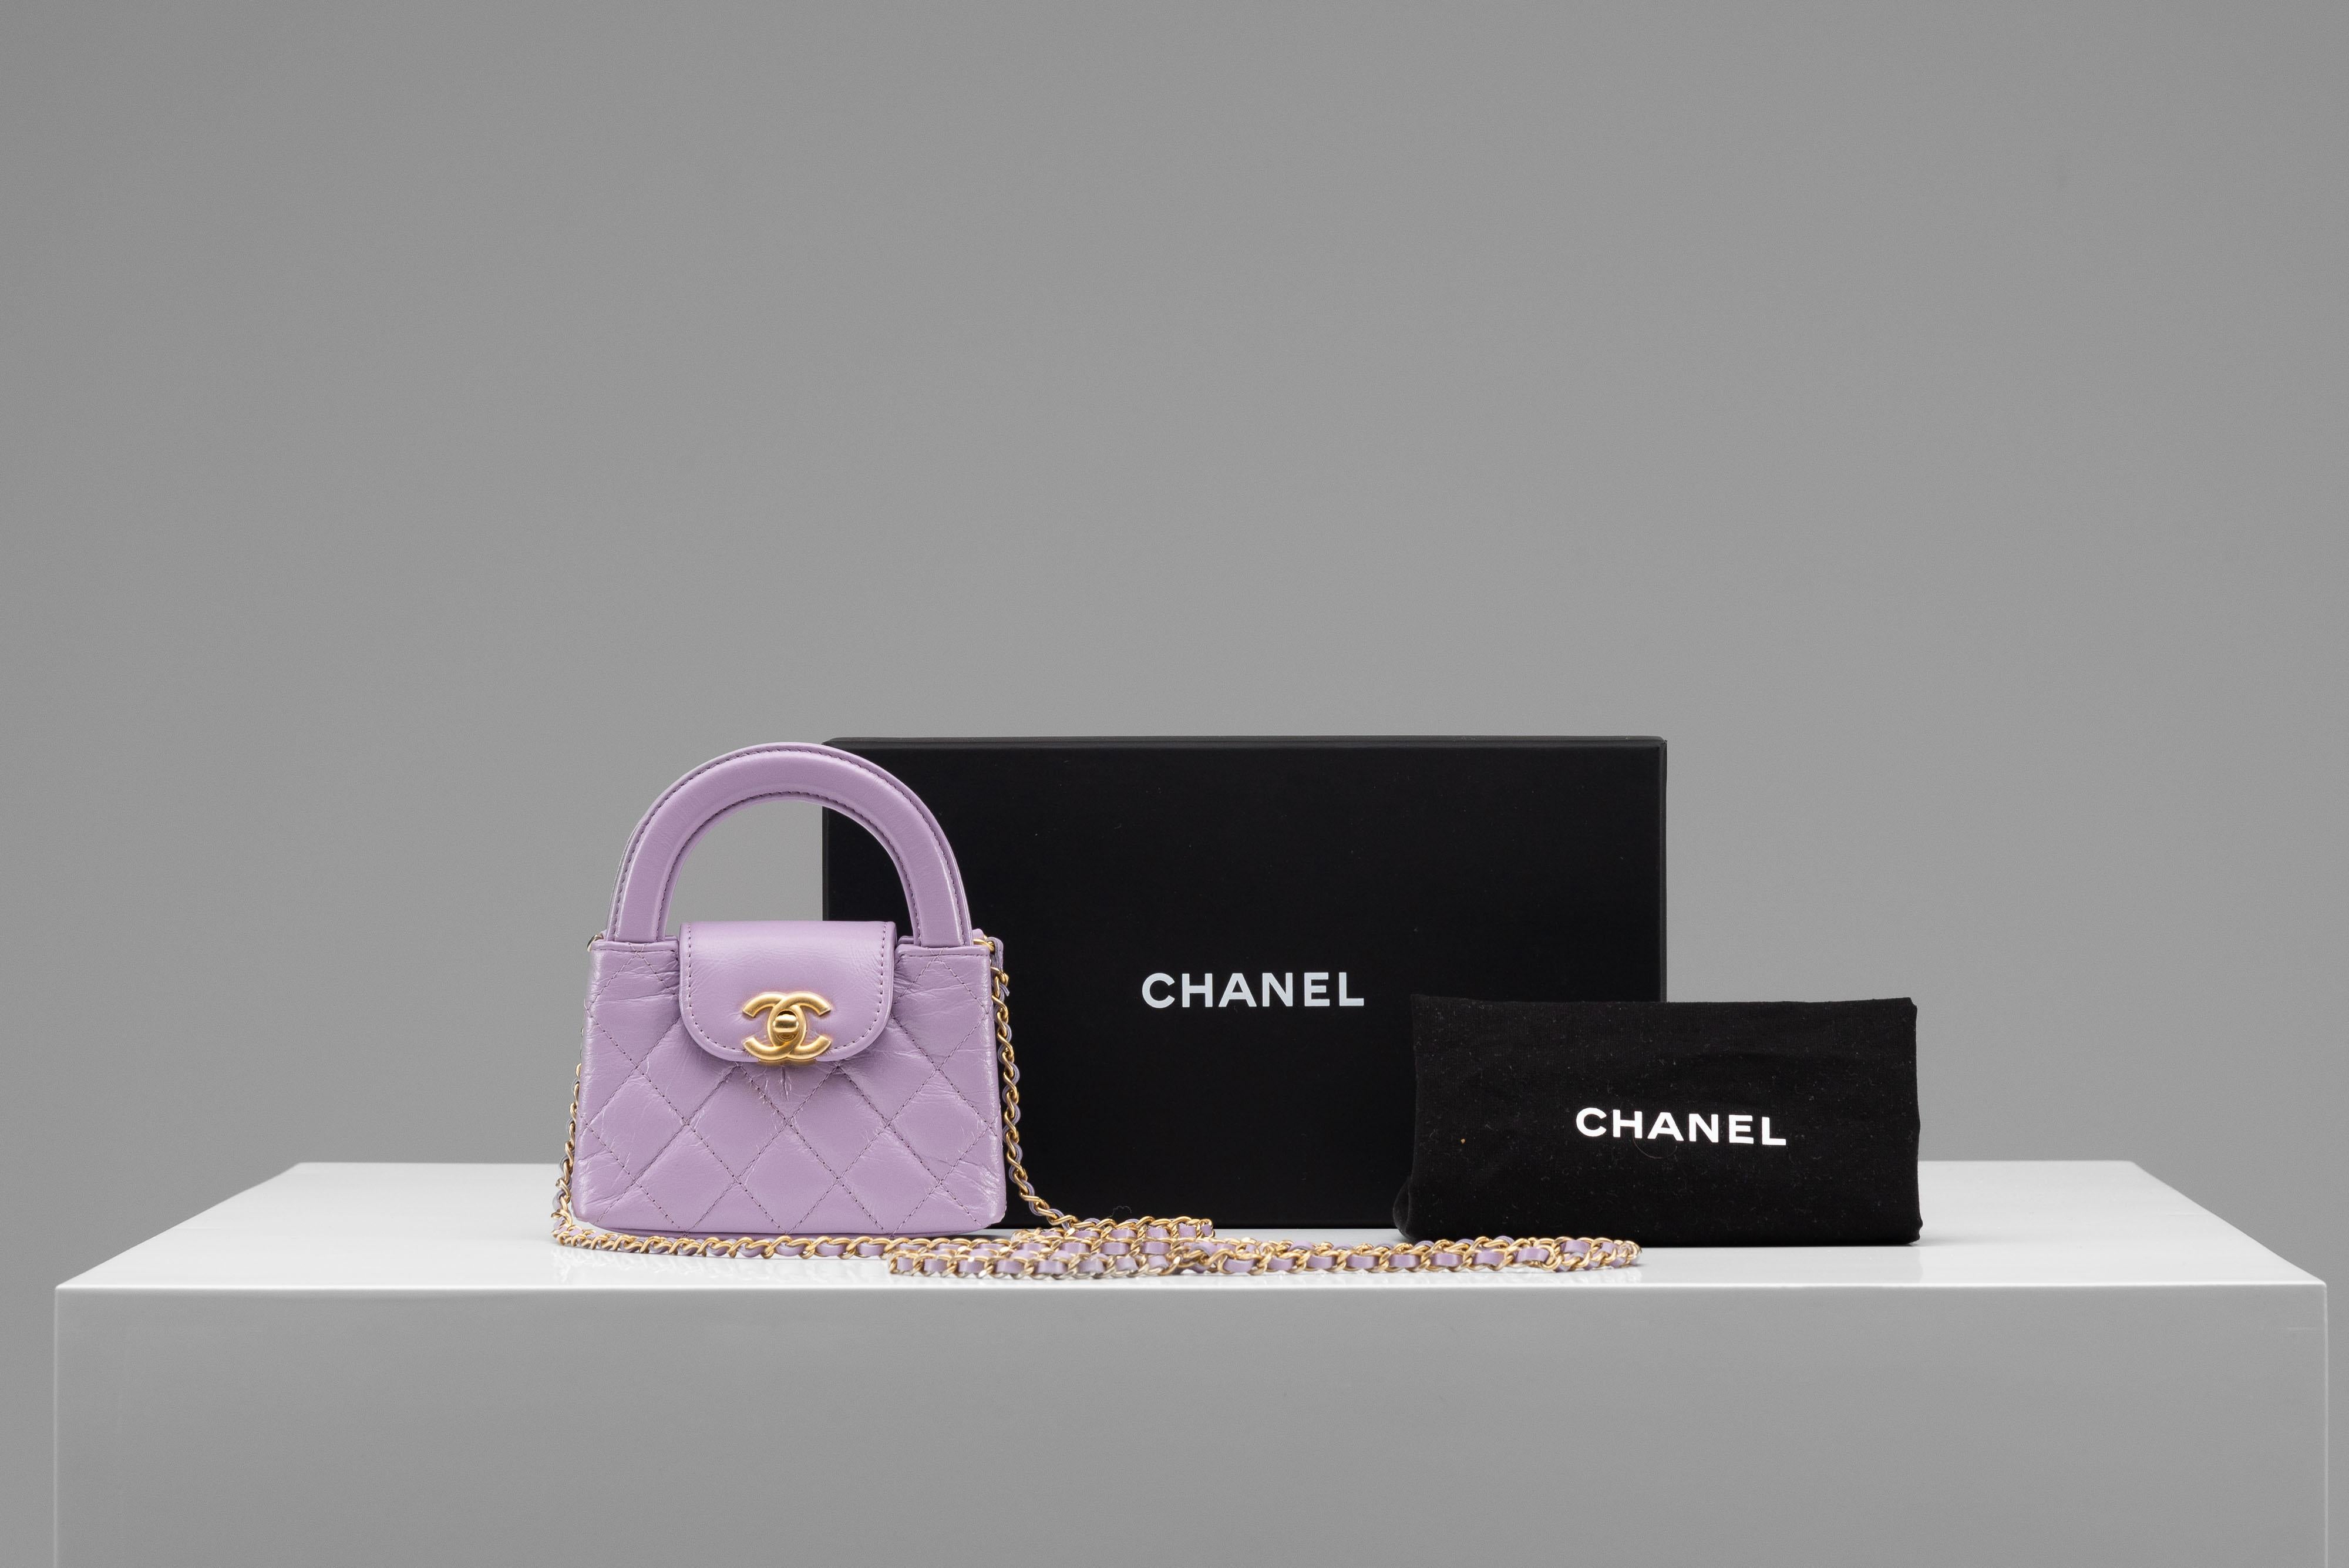 Aus der Kollektion von SAVINETI bieten wir diese NEW Chanel Nano Kelly Bag an:

- Marke: Chanel
- Modell: Nano Kelly
- Farbe: Flieder
- Jahr: 2024
- Zustand: NEU (unbenutzt)
- MATERIALIEN: Glänzendes gealtertes Kalbsleder, gebürstete goldene